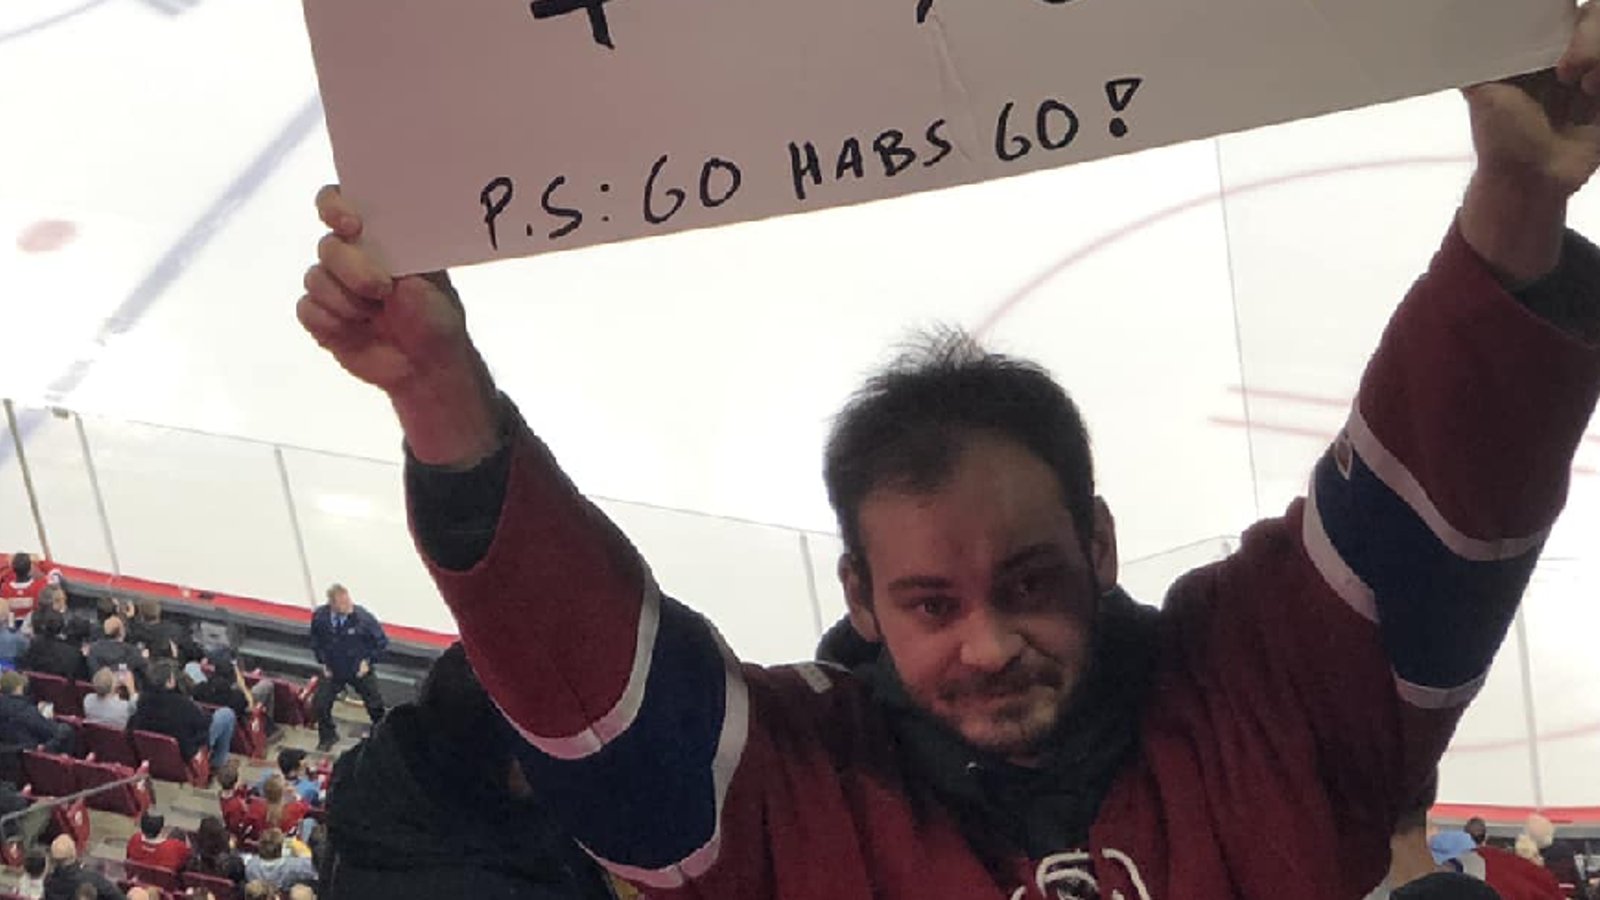 À la recherche d'un logement abordable, un homme passe son message lors d'un match du Canadien